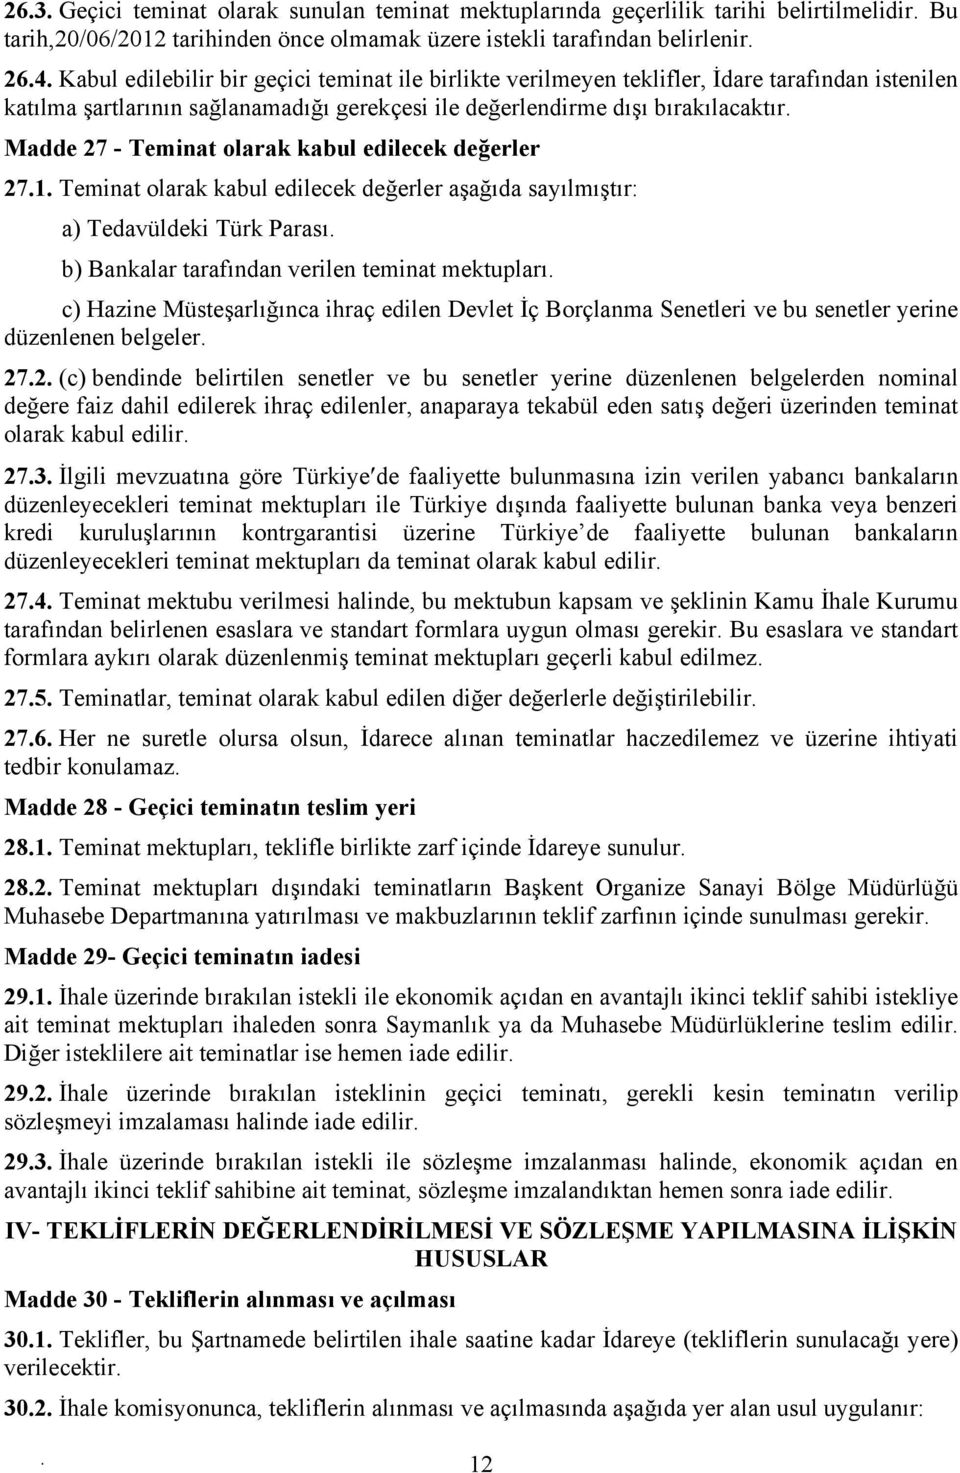 değerler 271 Teminat olarak kabul edilecek değerler aşağıda sayılmıştır: a) Tedavüldeki Türk Parası b) Bankalar tarafından verilen teminat mektupları c) Hazine Müsteşarlığınca ihraç edilen Devlet İç